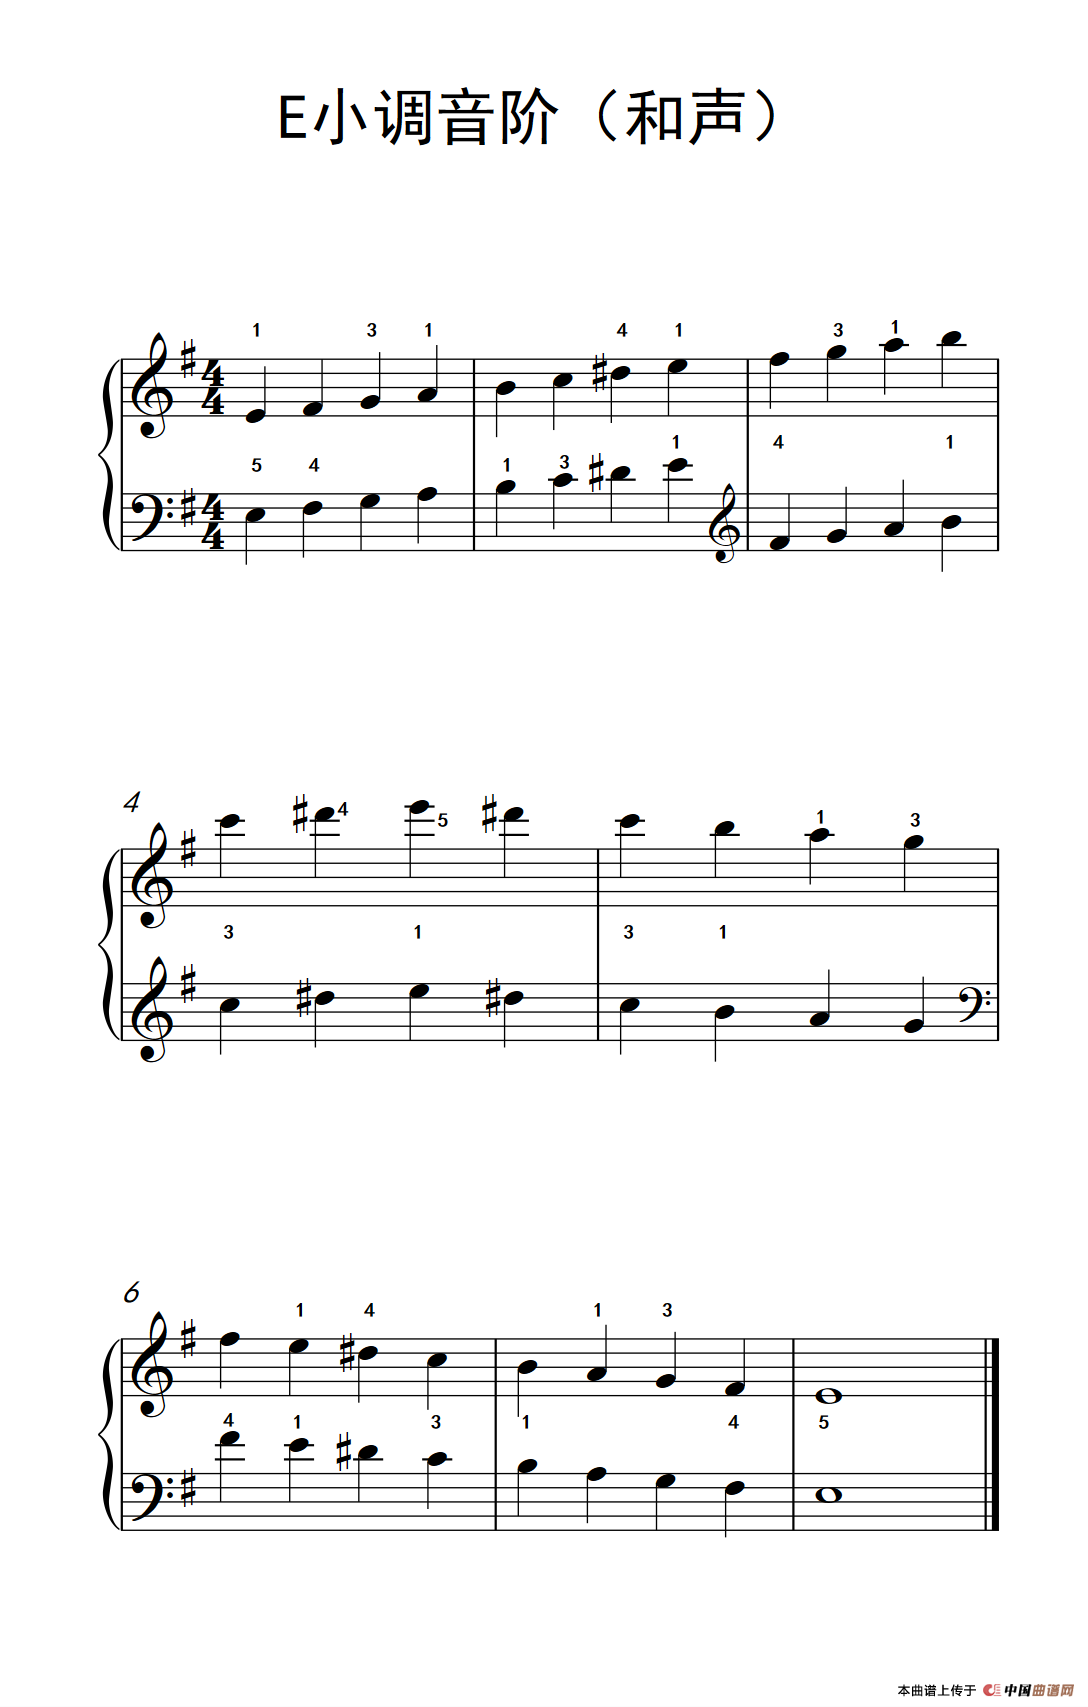 E小调音阶（和声）（儿童钢琴练习曲）